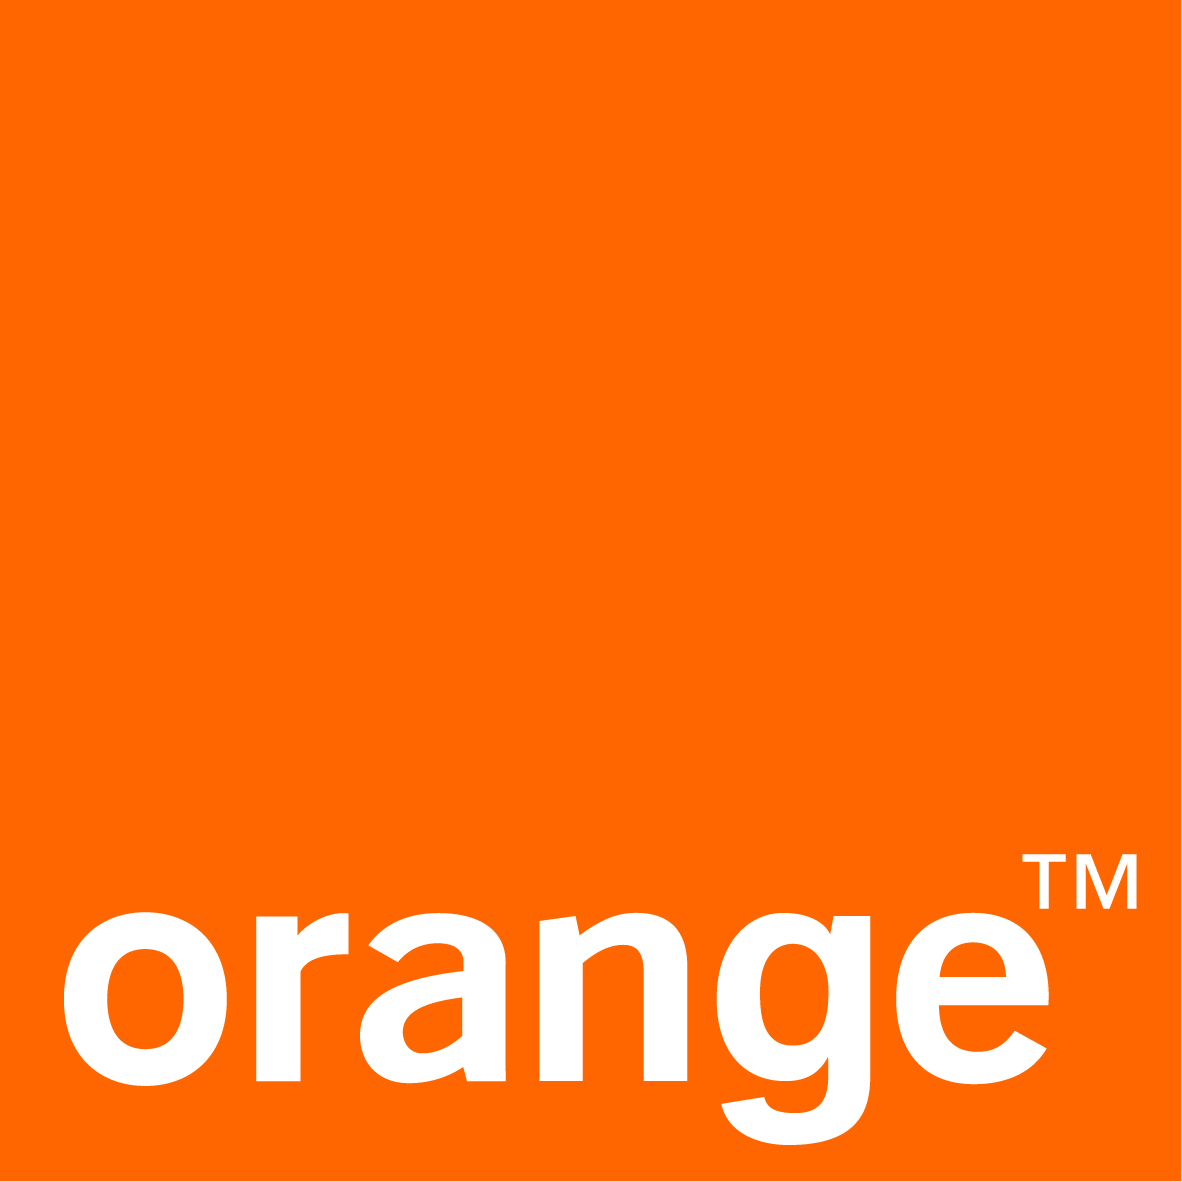 Outre-Mer : Nouvelles chaînes sur la TV d'Orange